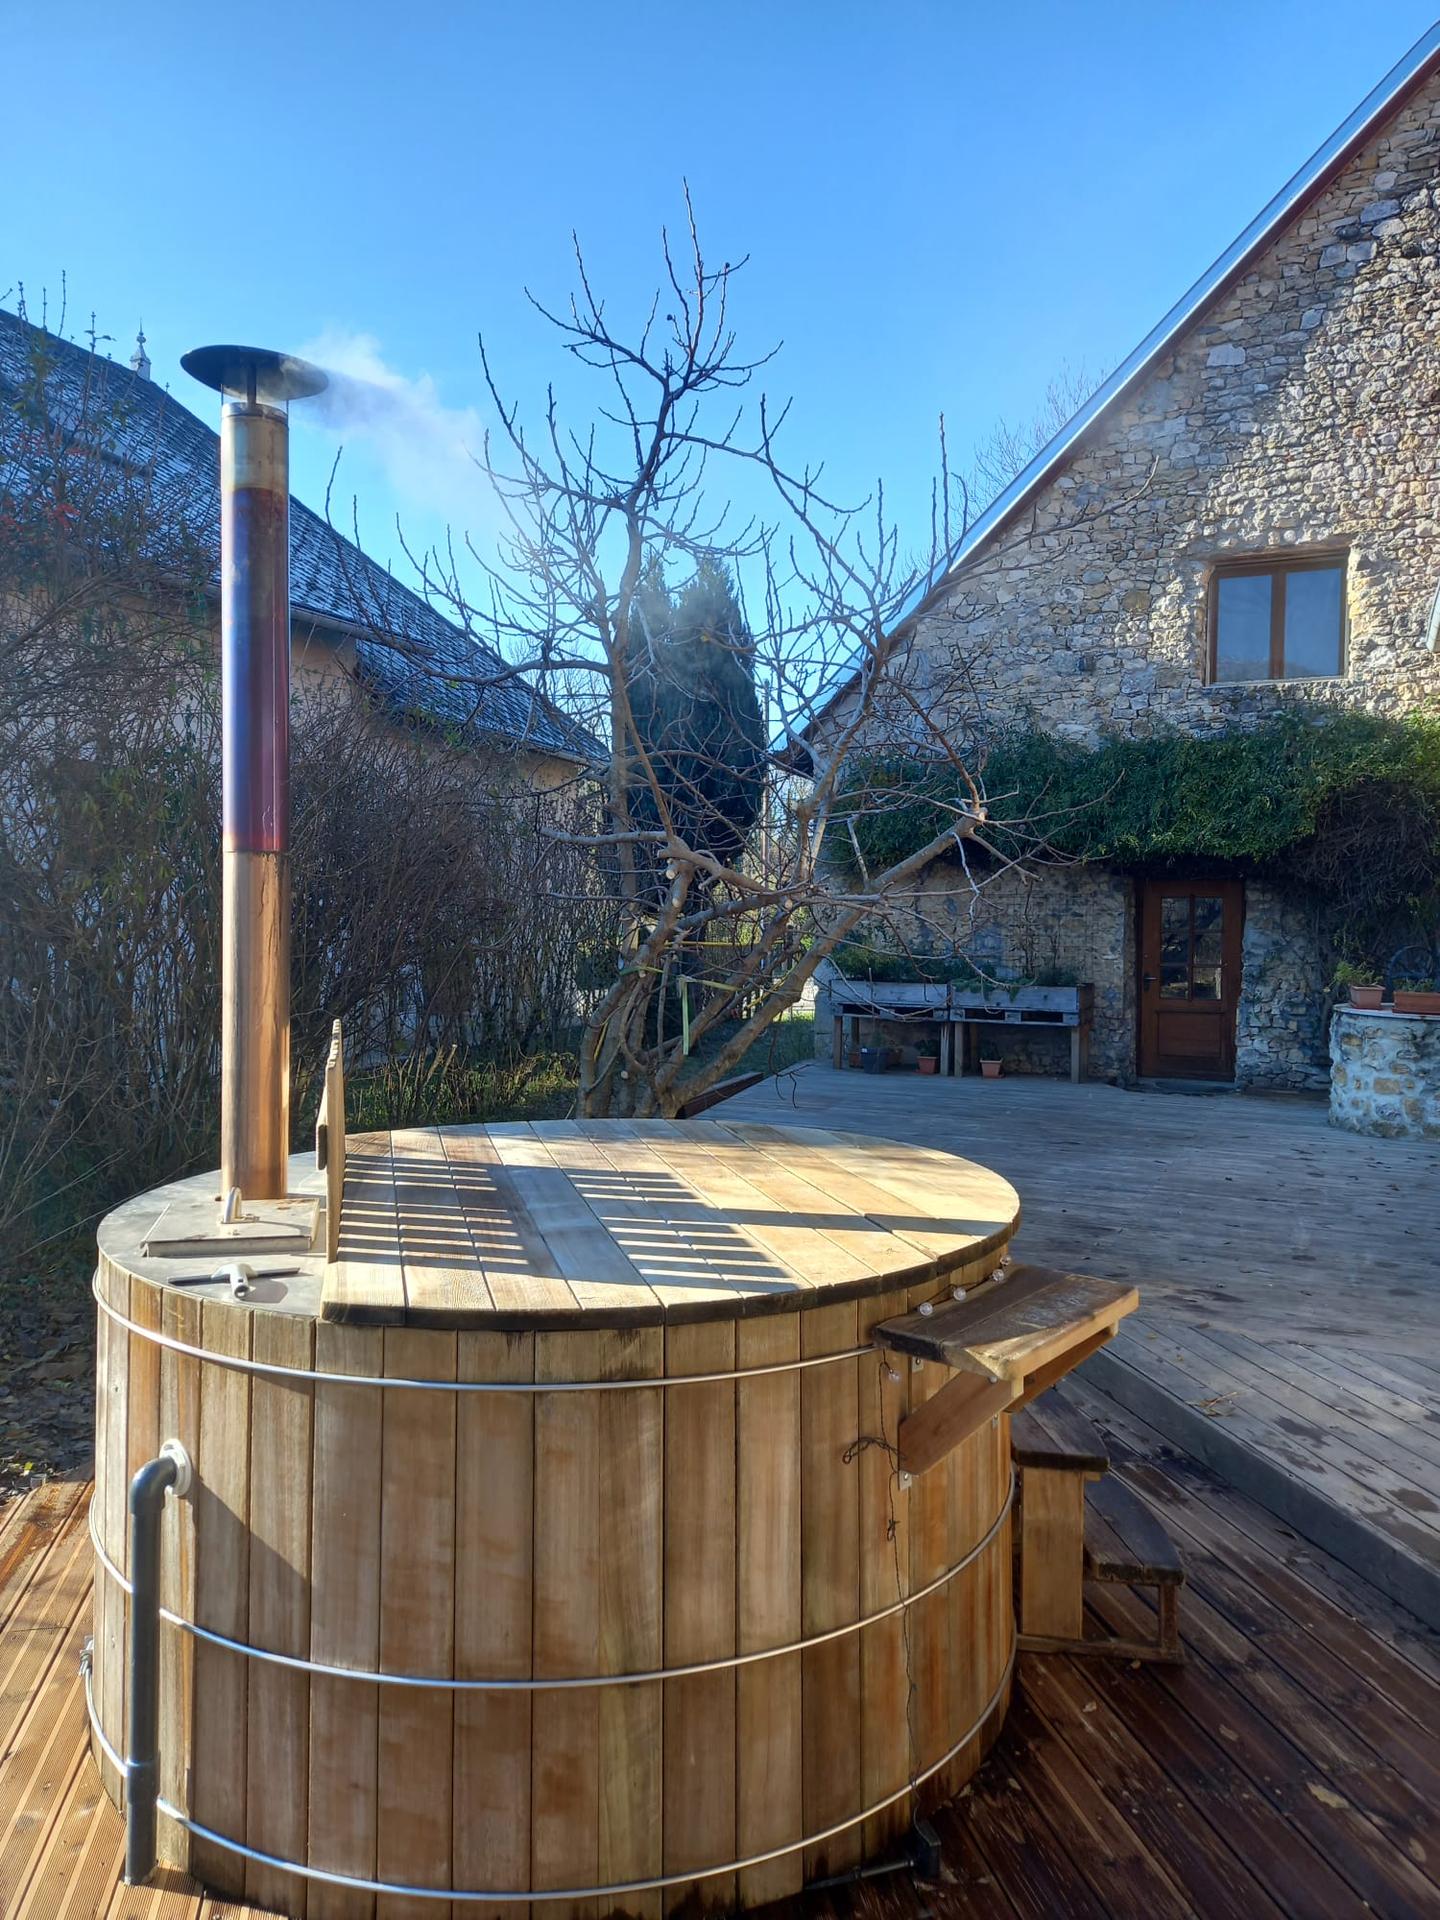 Hôte GreenGo: VALRELEY Maison d'hôtes eco-friendly et bain nordique chauffé au feu de bois - Image 3